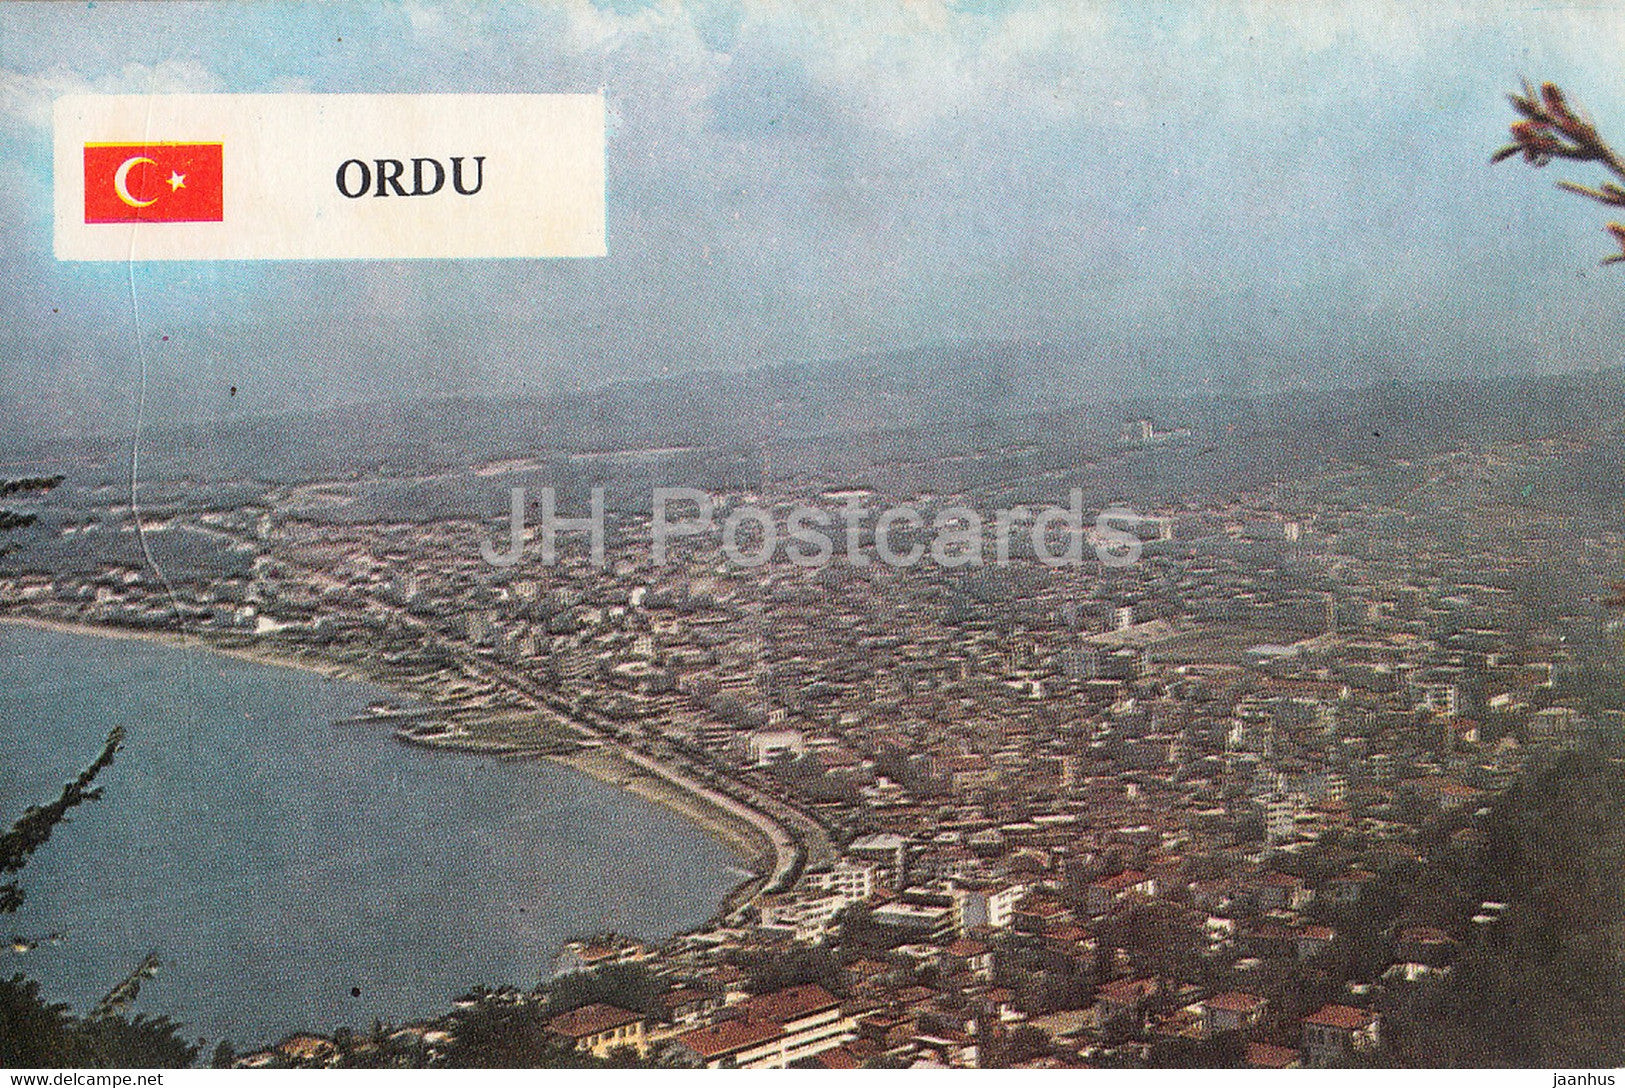 Ordu - general view - Turkey - unused - JH Postcards